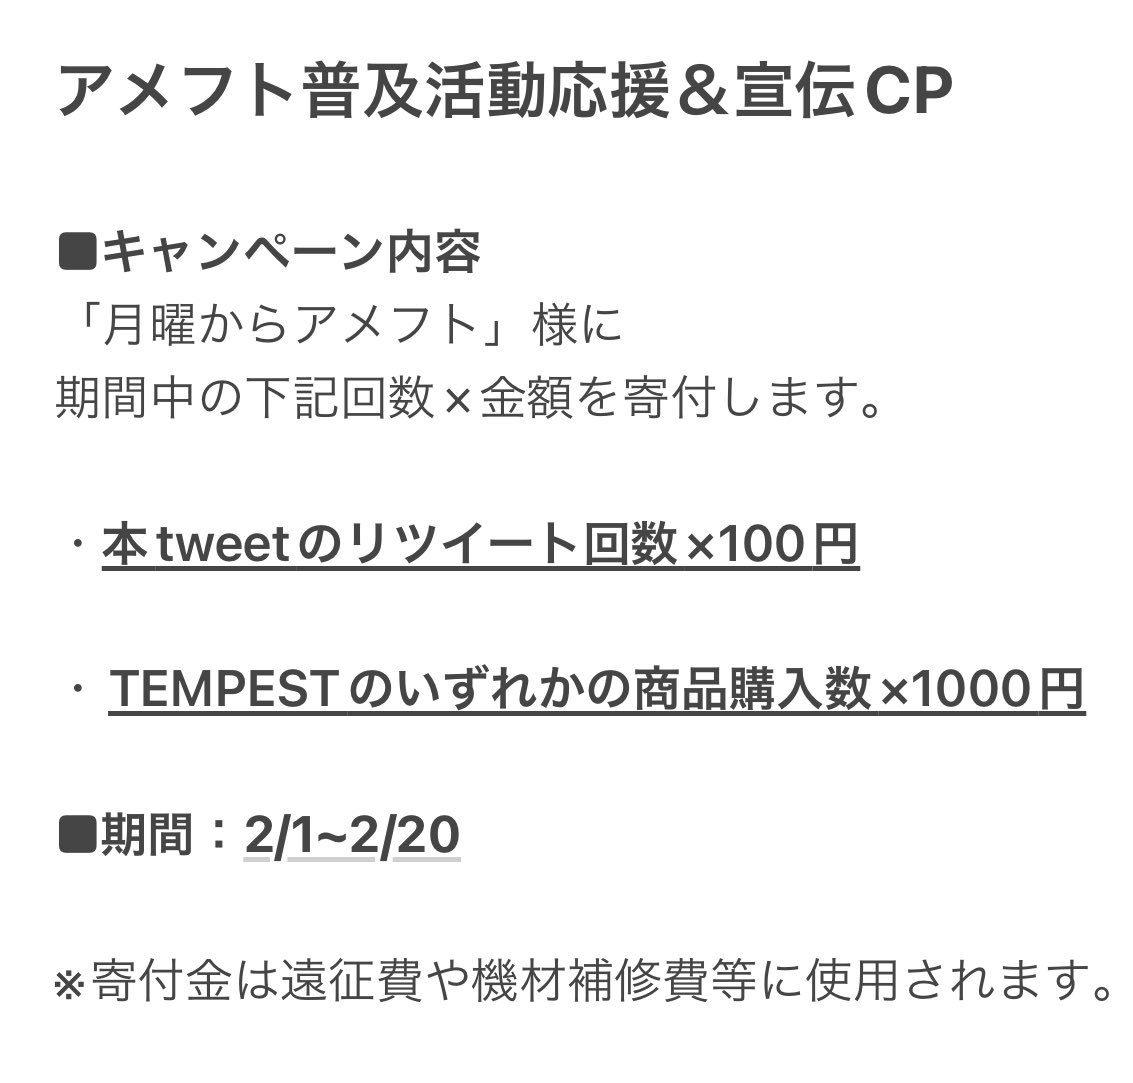 📣拡散希望📣 TEMPESTは、アメフト普及活動を応援します💪 CPを実施して「月曜からアメフト」様 に対して添付の通り活動支援をします。 みんなで応援して、アメフトを盛り上げましょう！ ぜひ、リツイートとご購入をお願いします🙇 TEMPESTのご購入はこちらから⬇️ football-tempest.myshopify.com/en-jp?locale=en